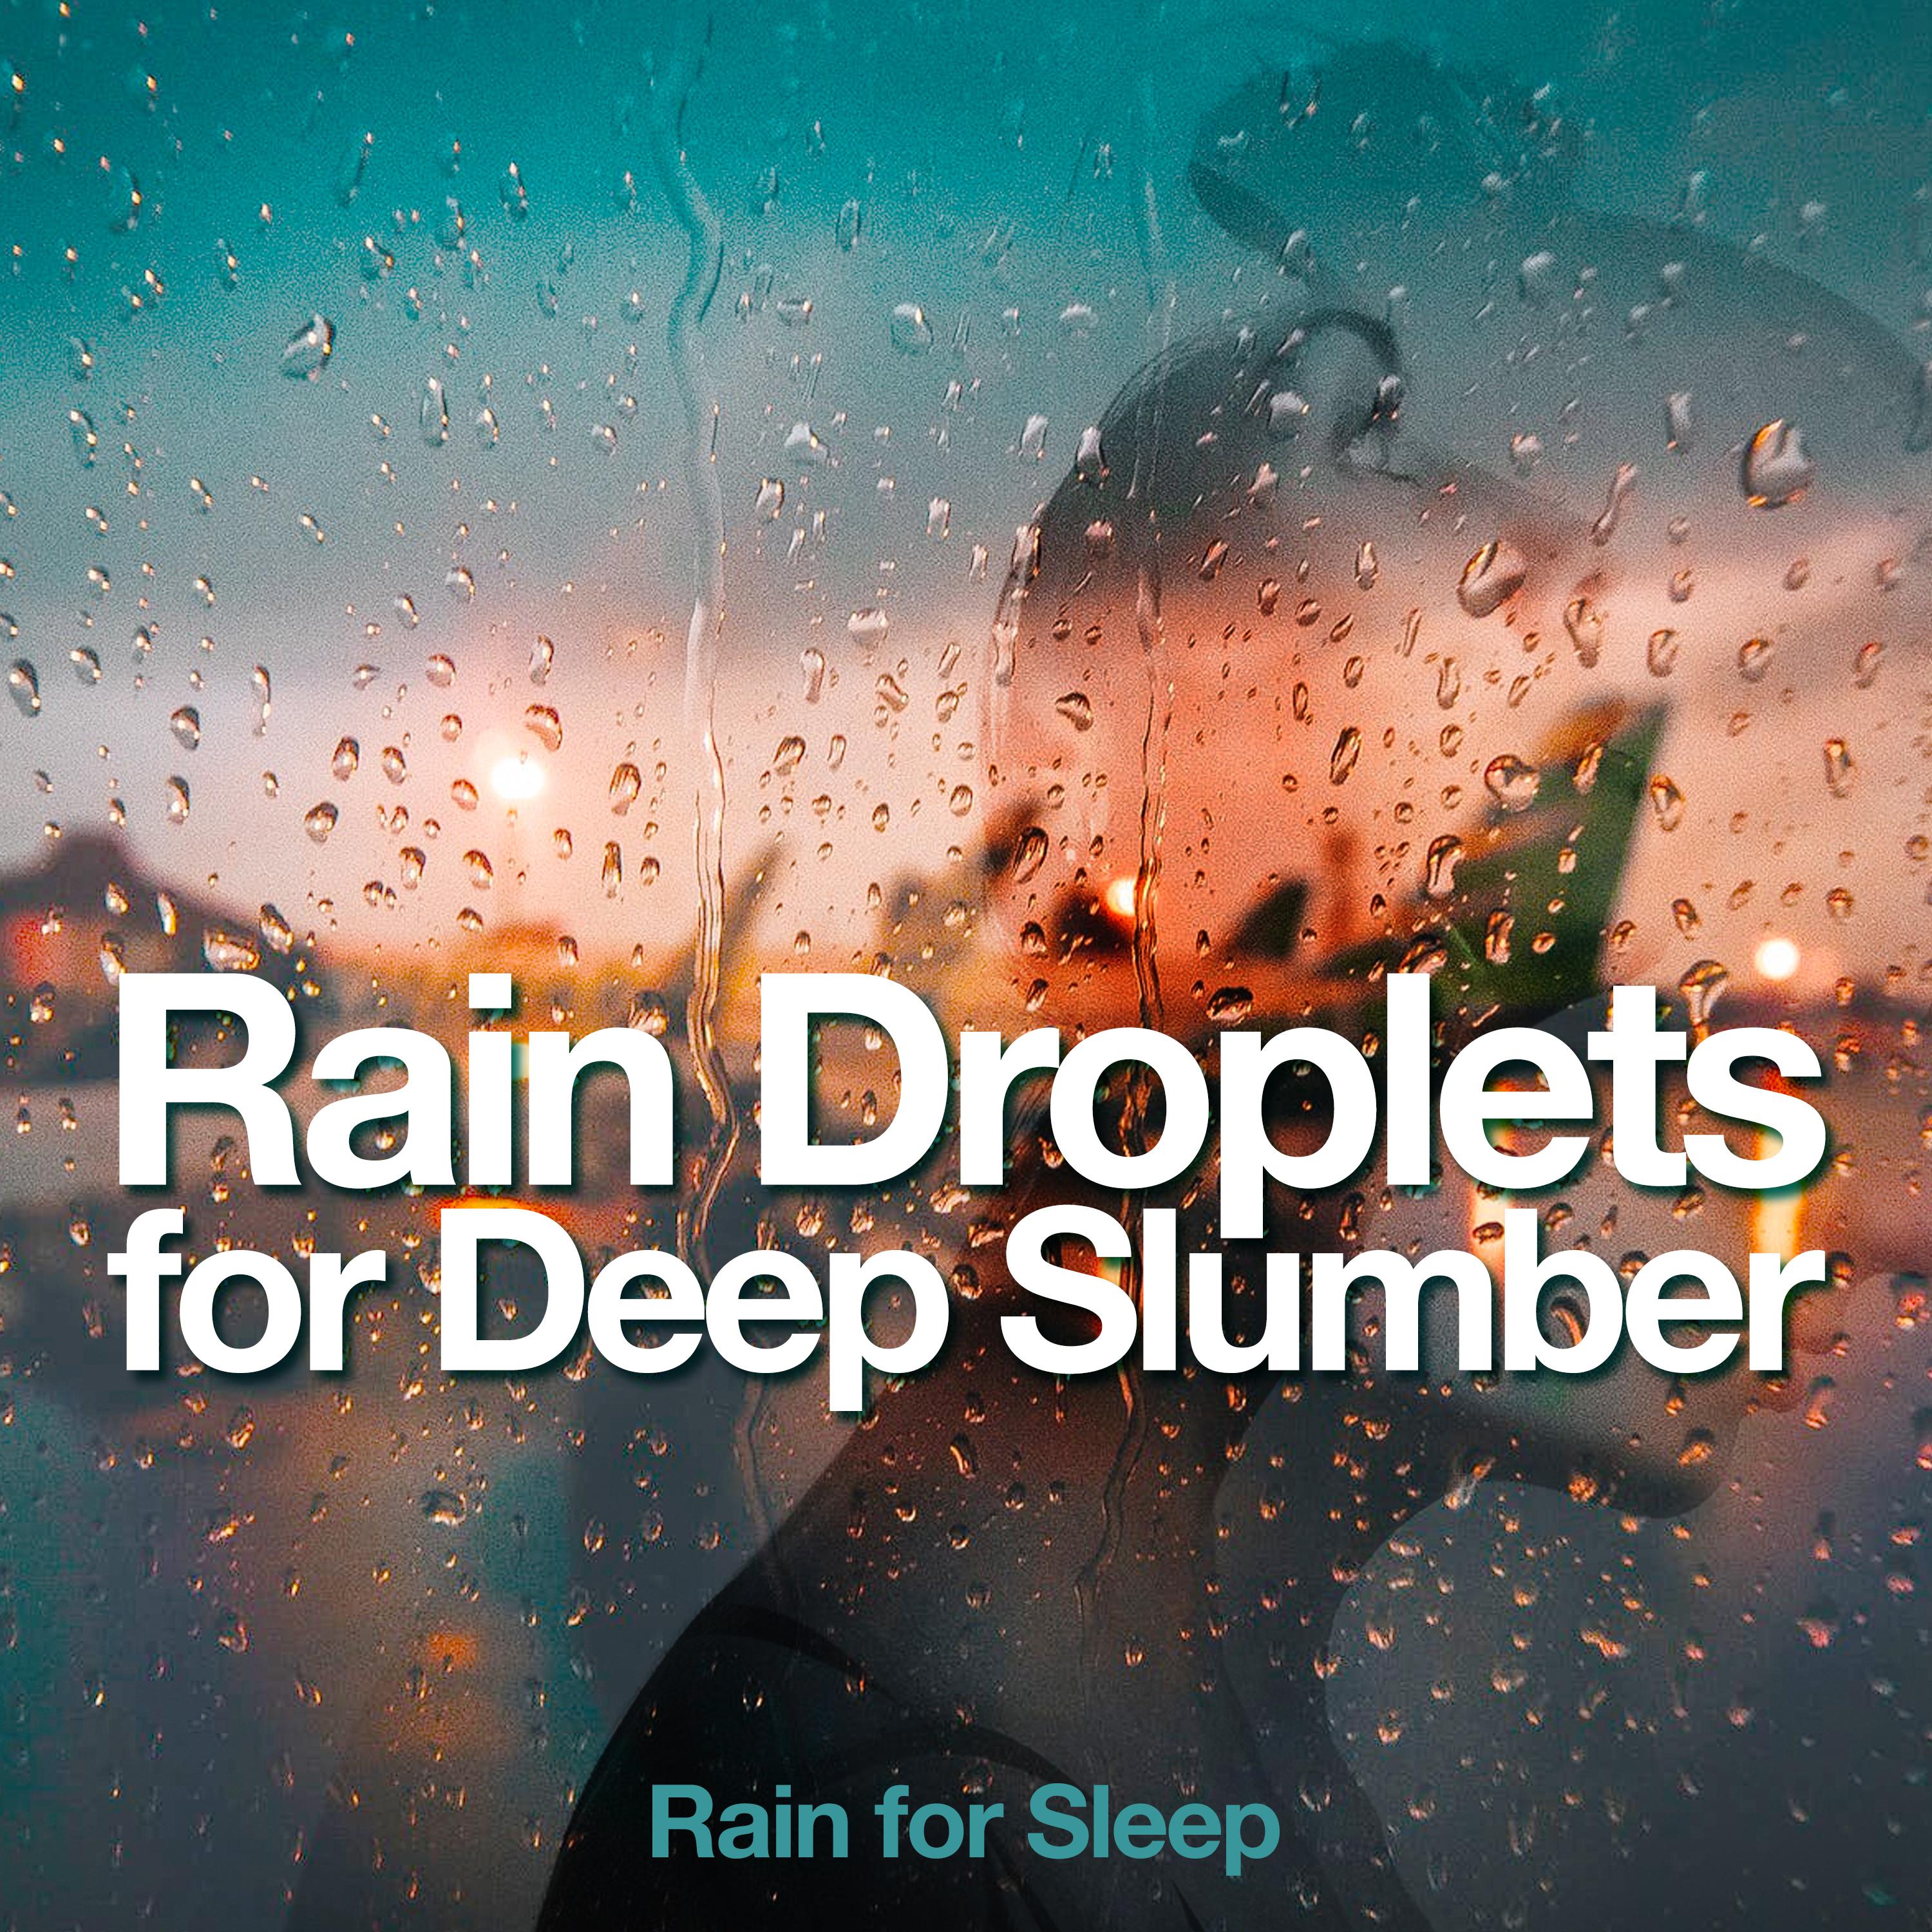 Rain for Sleep - Clear Rain Droplets